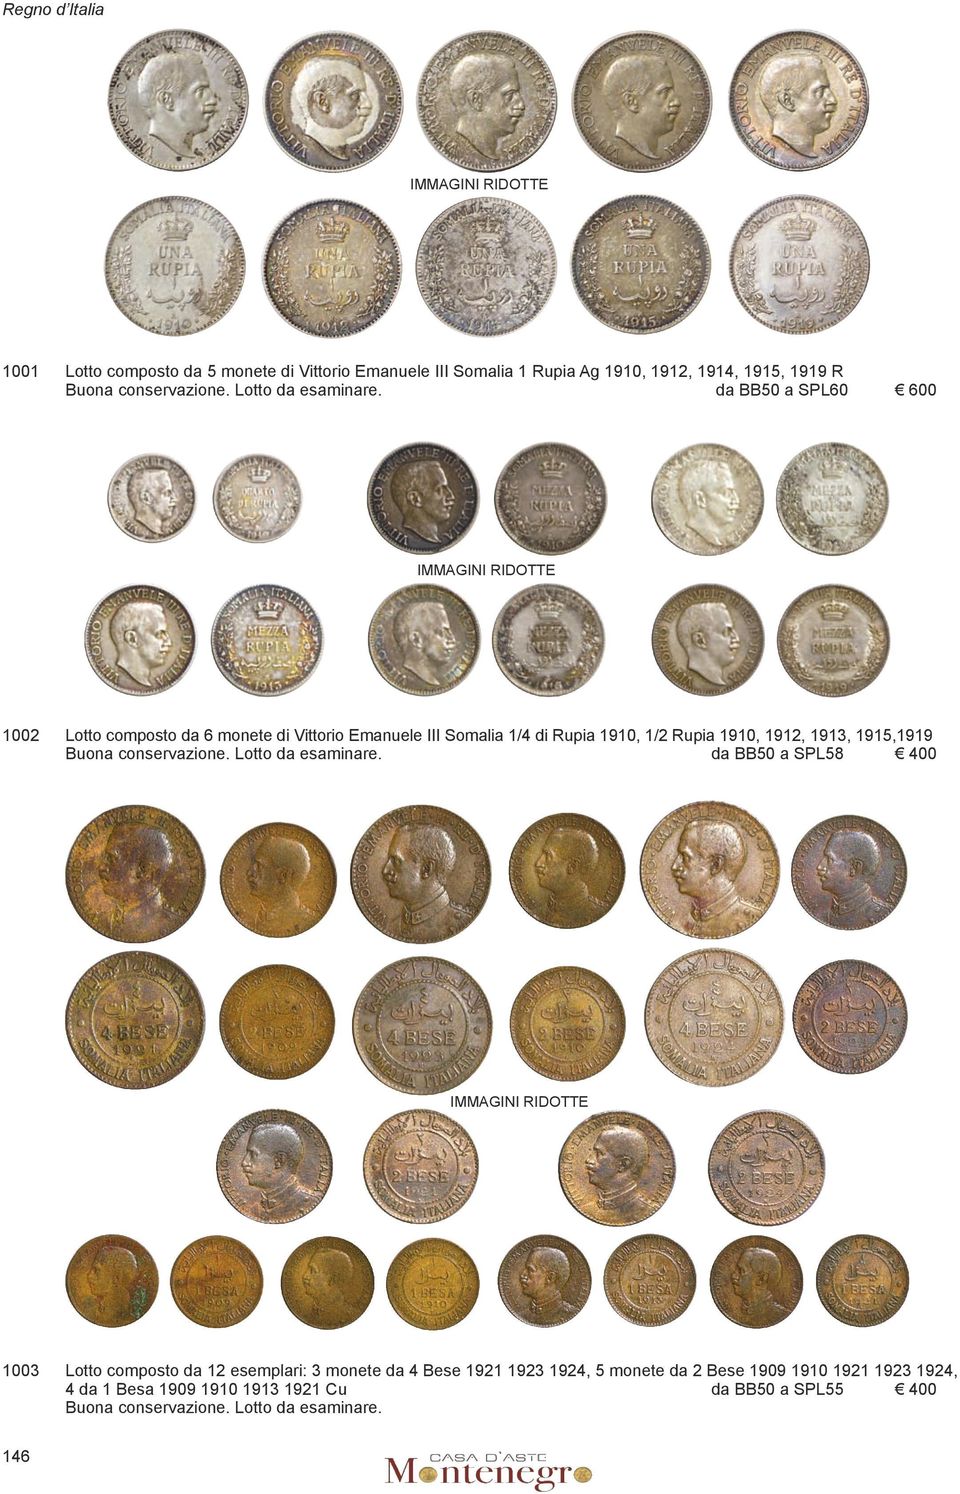 da bb50 a spl60 600 Immagini ridotte 1002 lotto composto da 6 monete di Vittorio Emanuele III Somalia 1/4 di Rupia 1910, 1/2 Rupia 1910, 1912, 1913,